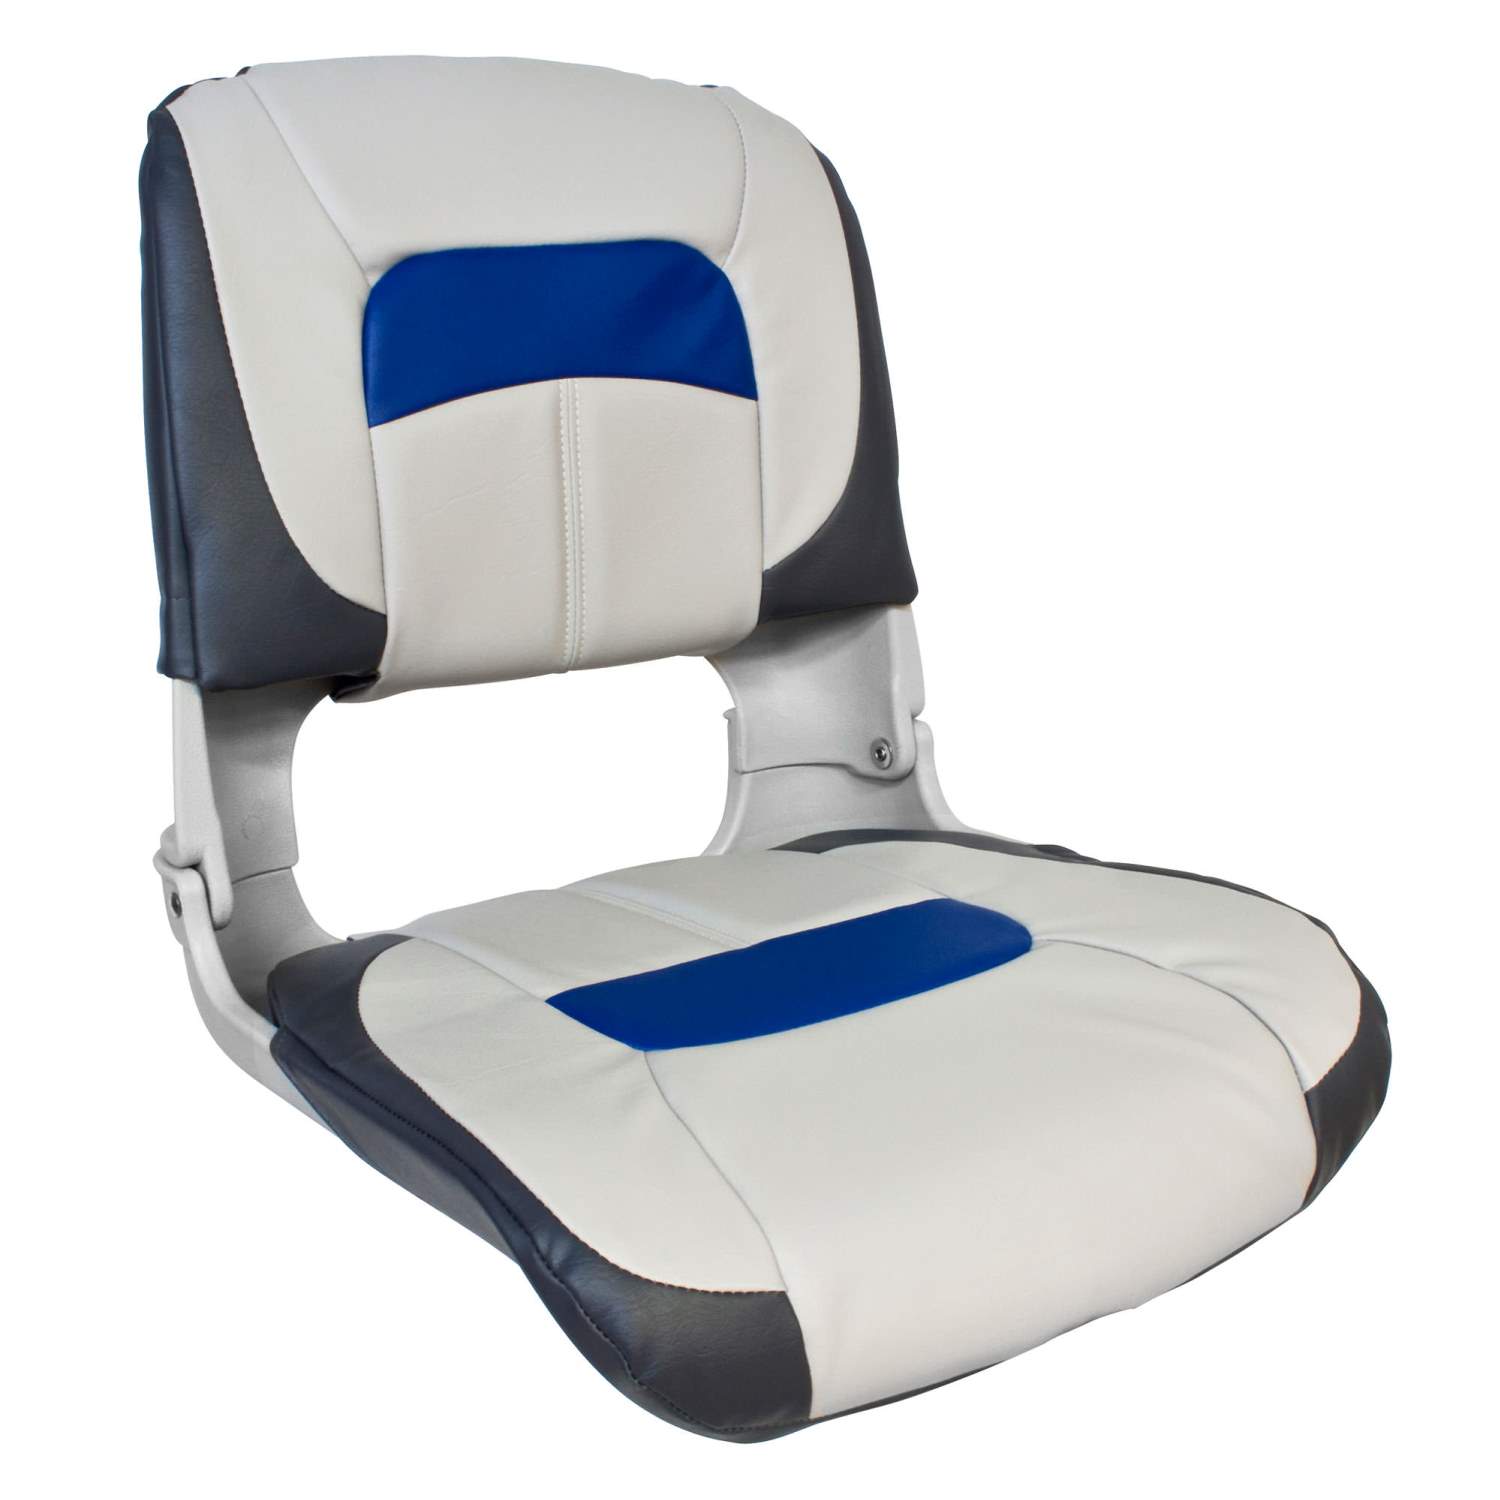 Waterside | Bootstoel | Luxus High Back Comfort Plus | Blauw - Wit - Grijs | 47x46x50cm | Kunststof | Boat Seat  